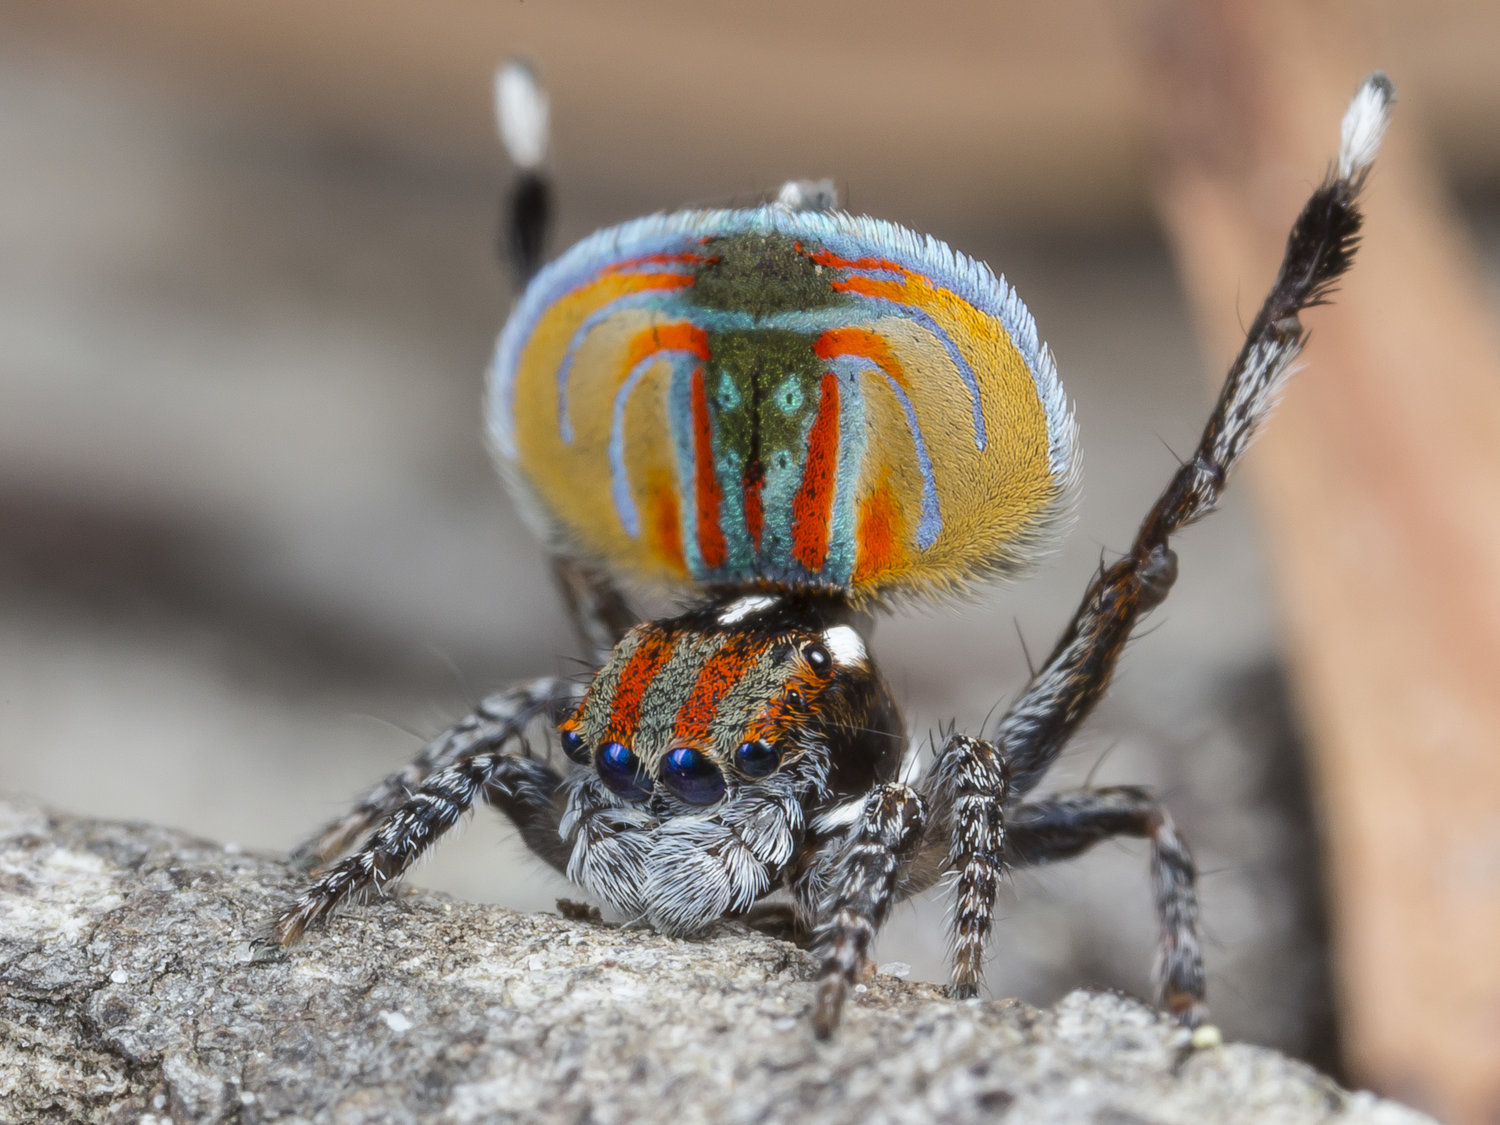 Maratus Volans — Peacock Spider